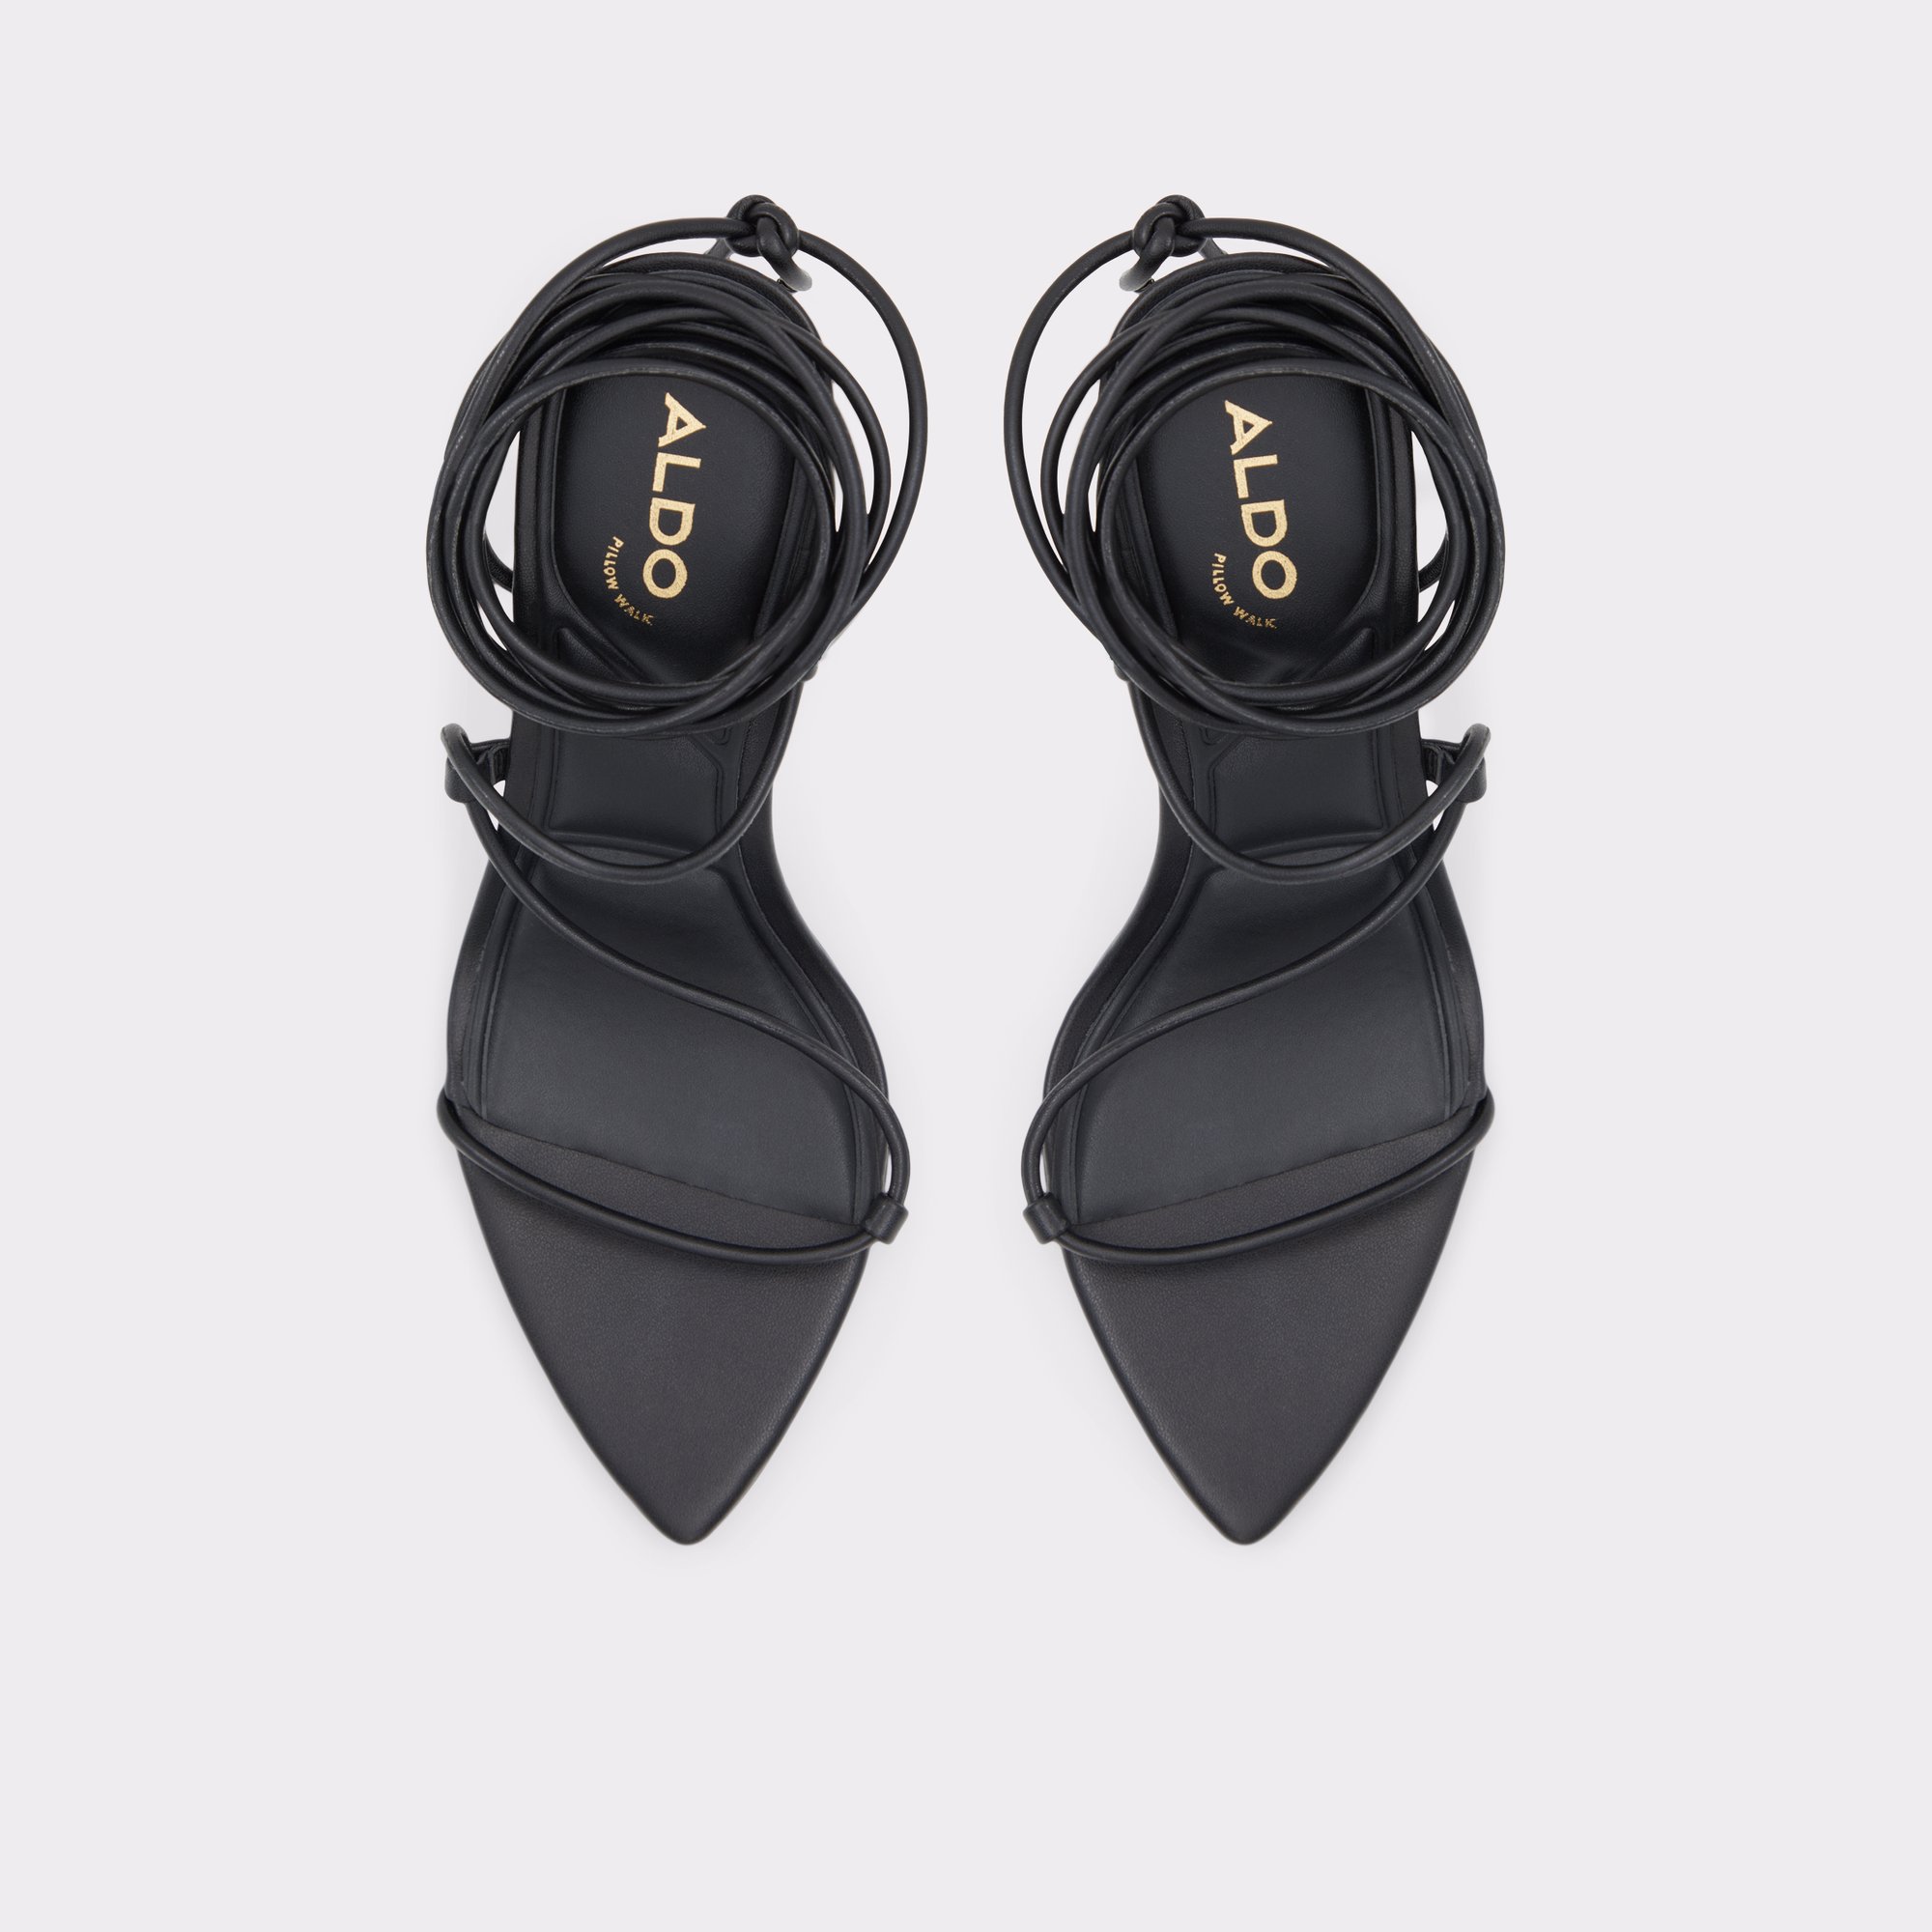 aldo black sandals